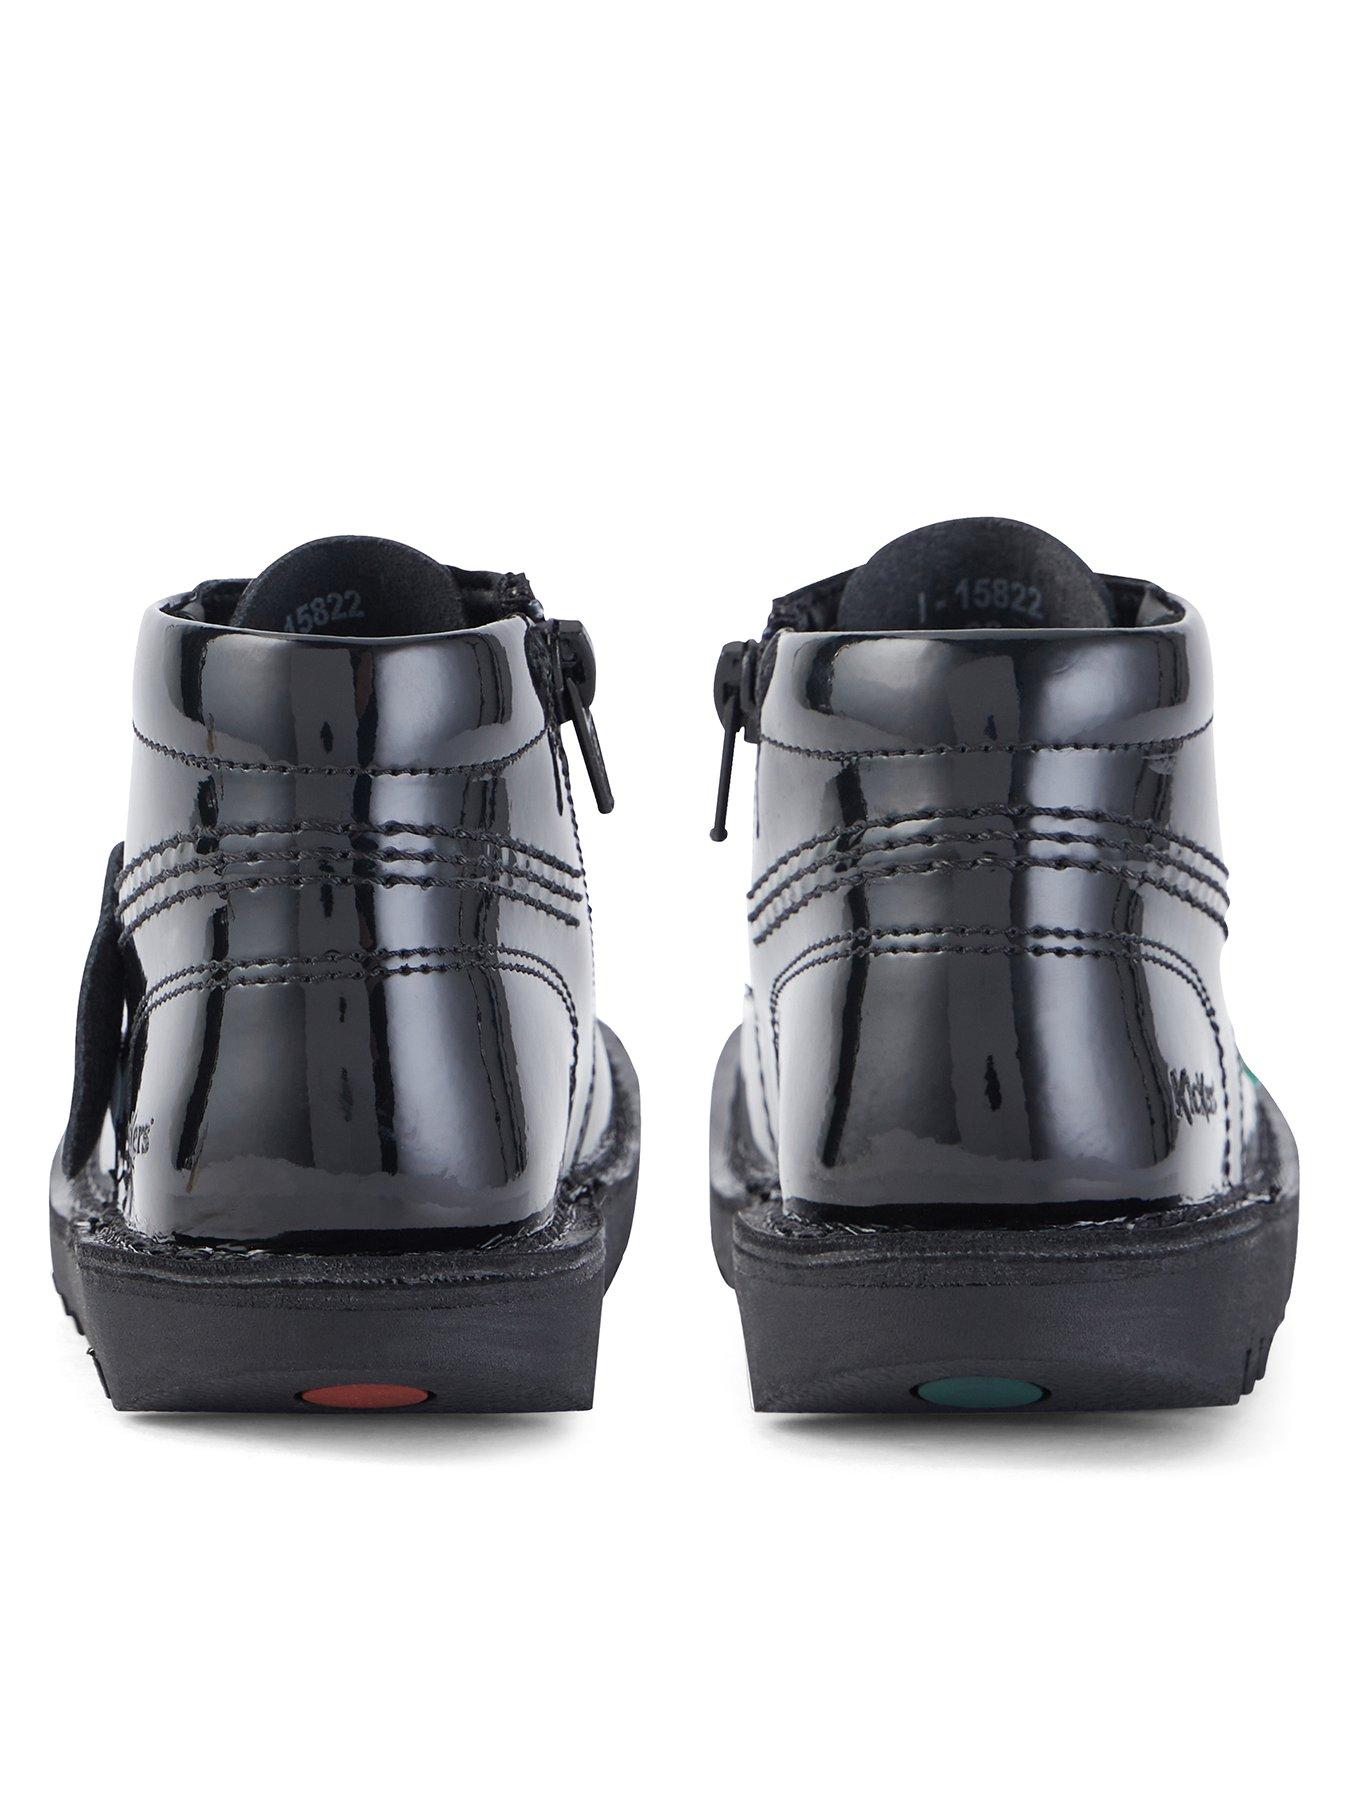 Meetbaar De lucht klauw Kickers Kick Hi Patent School Shoes - Black | very.co.uk